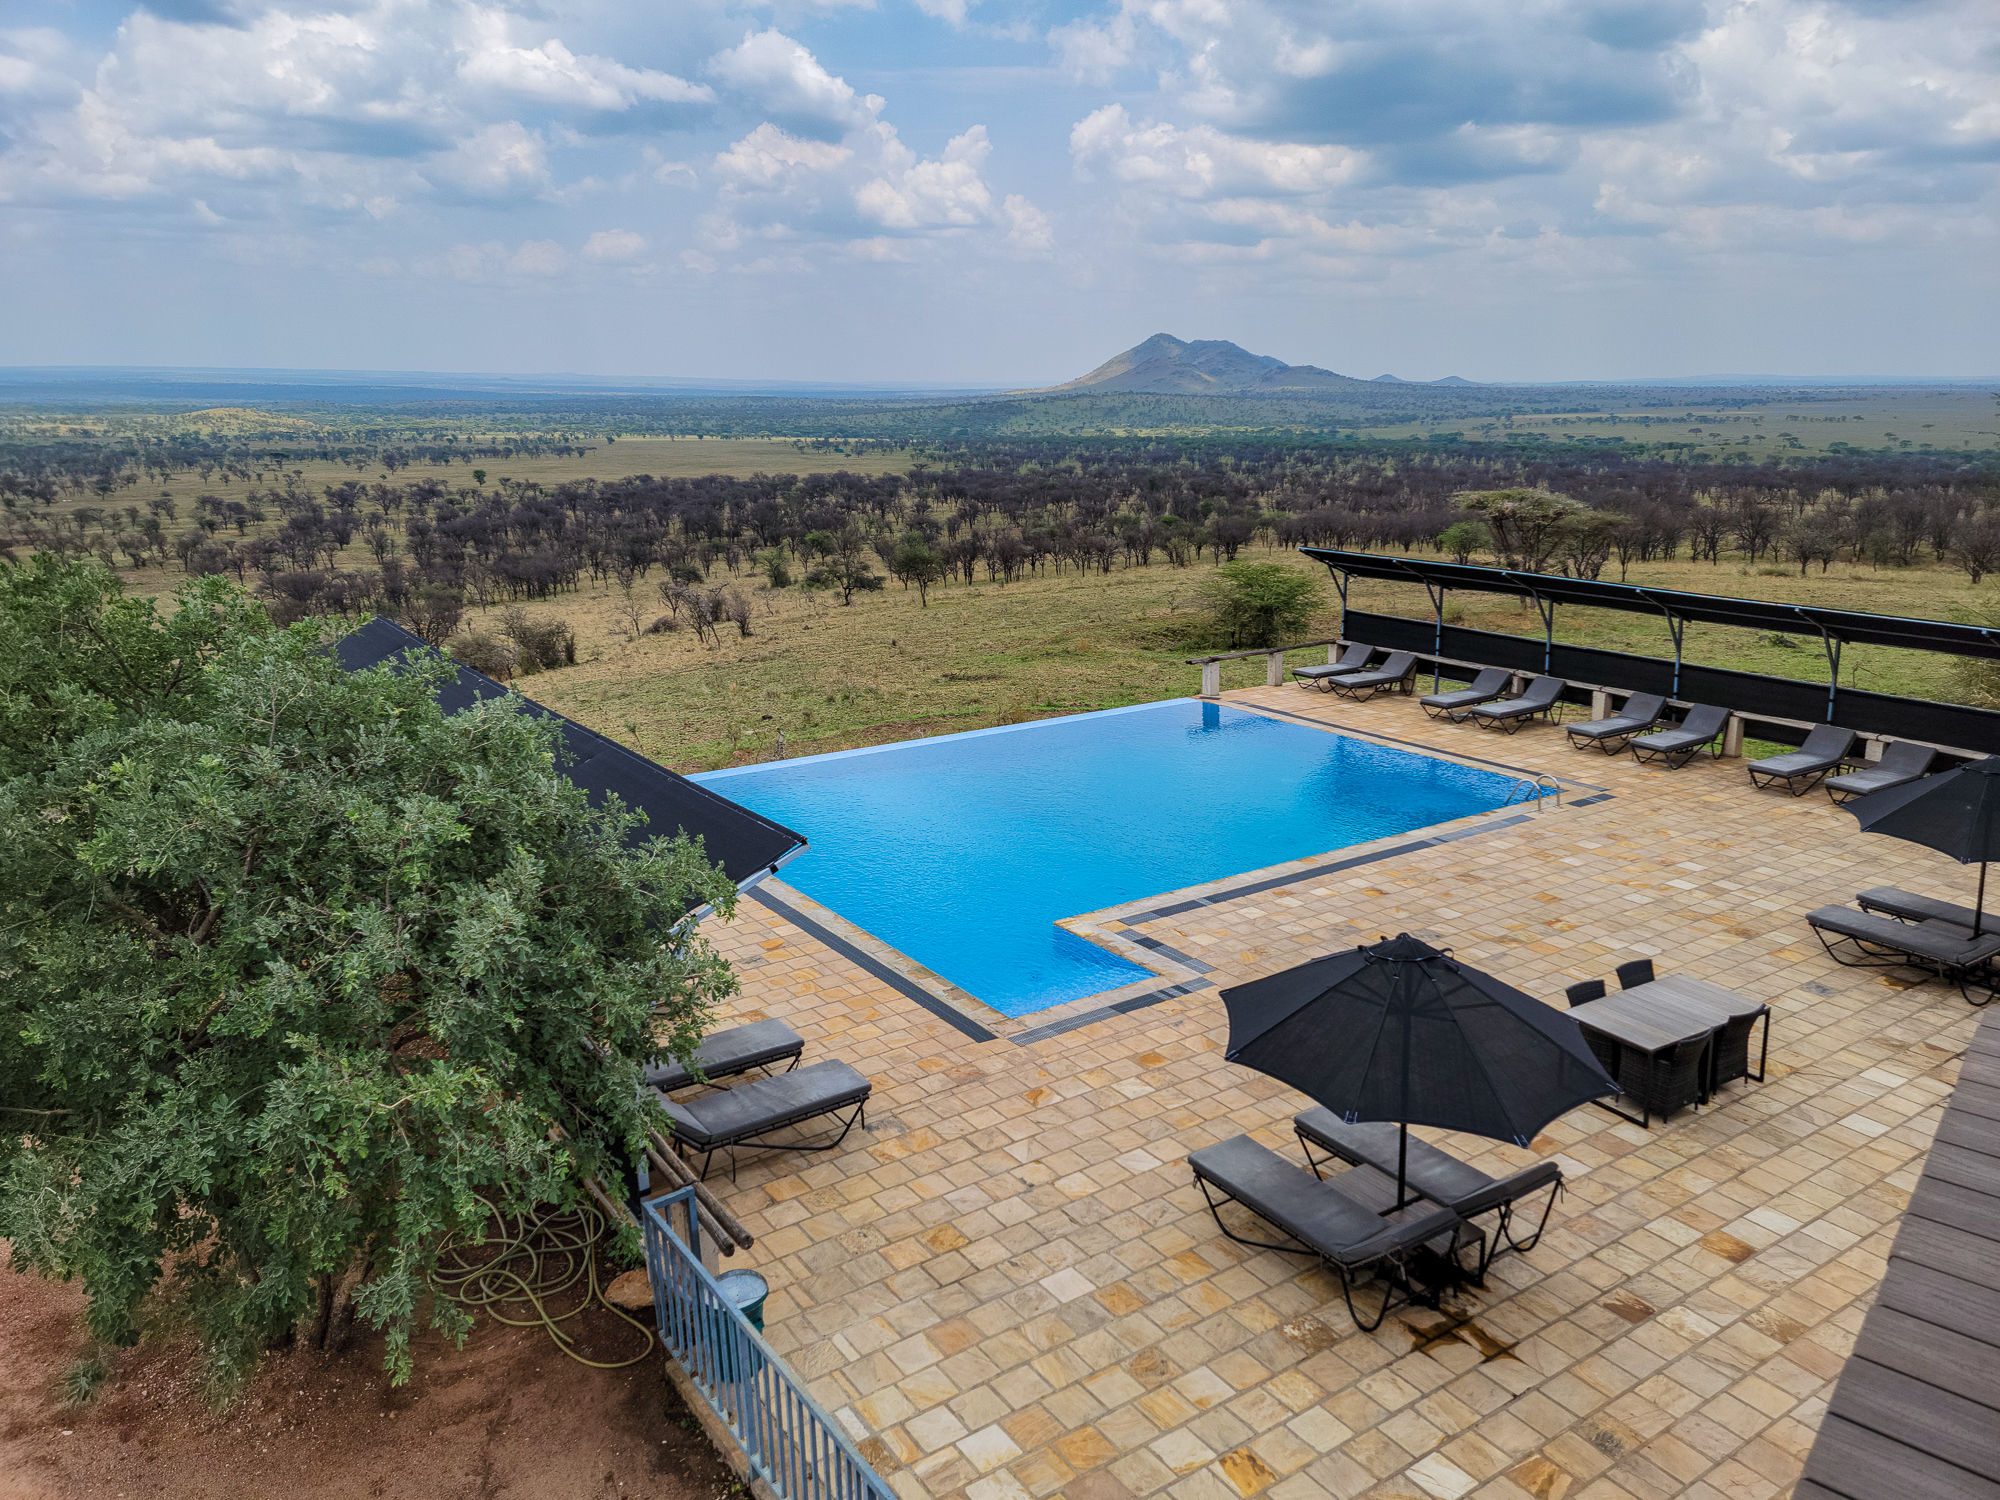 Pool at a Lodge in Tanzania